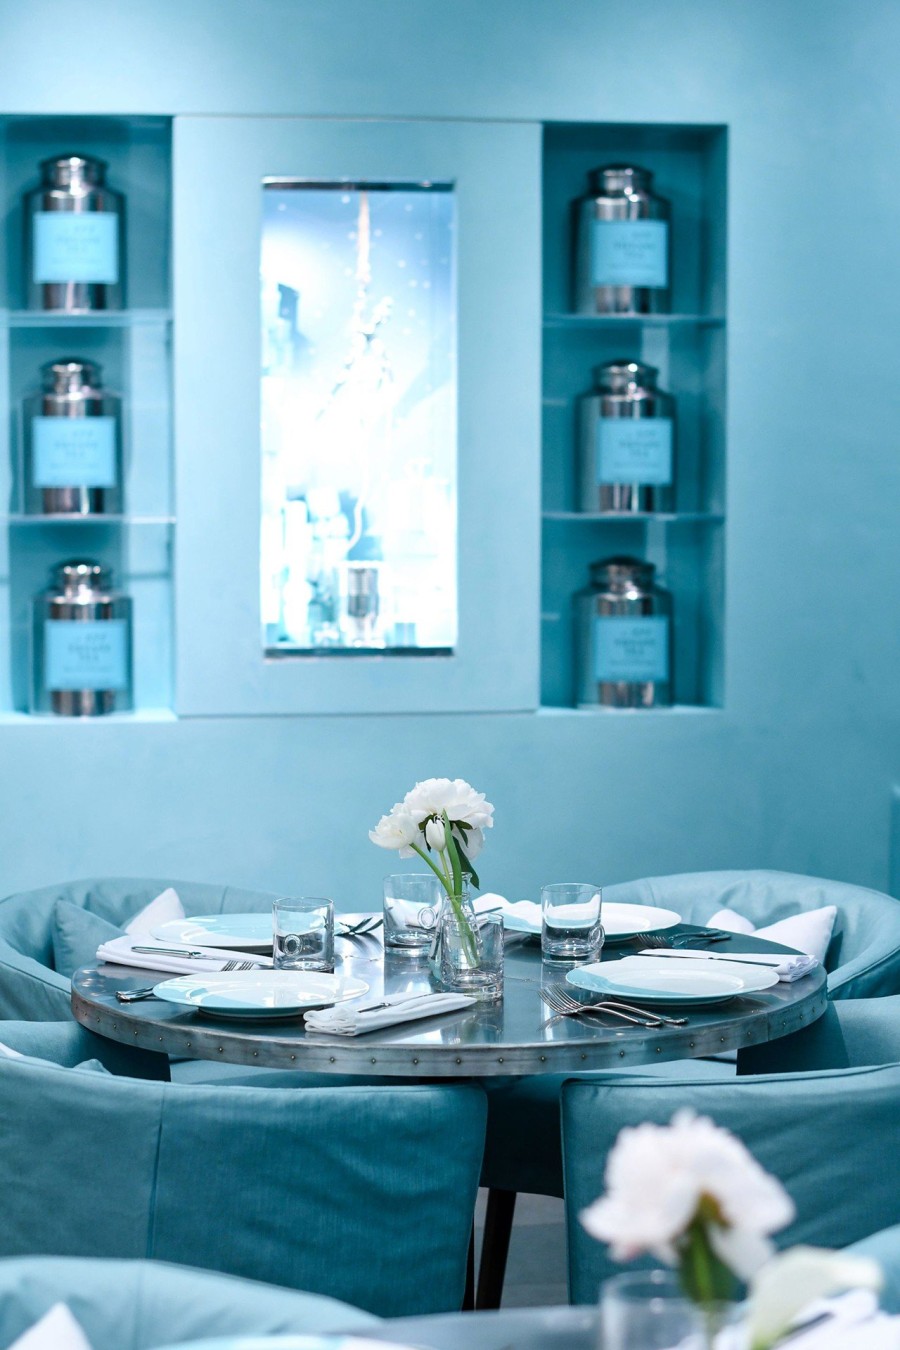 Δοκιμάστε το δικό σας Breakfast in Tiffany’s στο ολοκαίνουριο Blue Box Café- Φωτογραφία 4